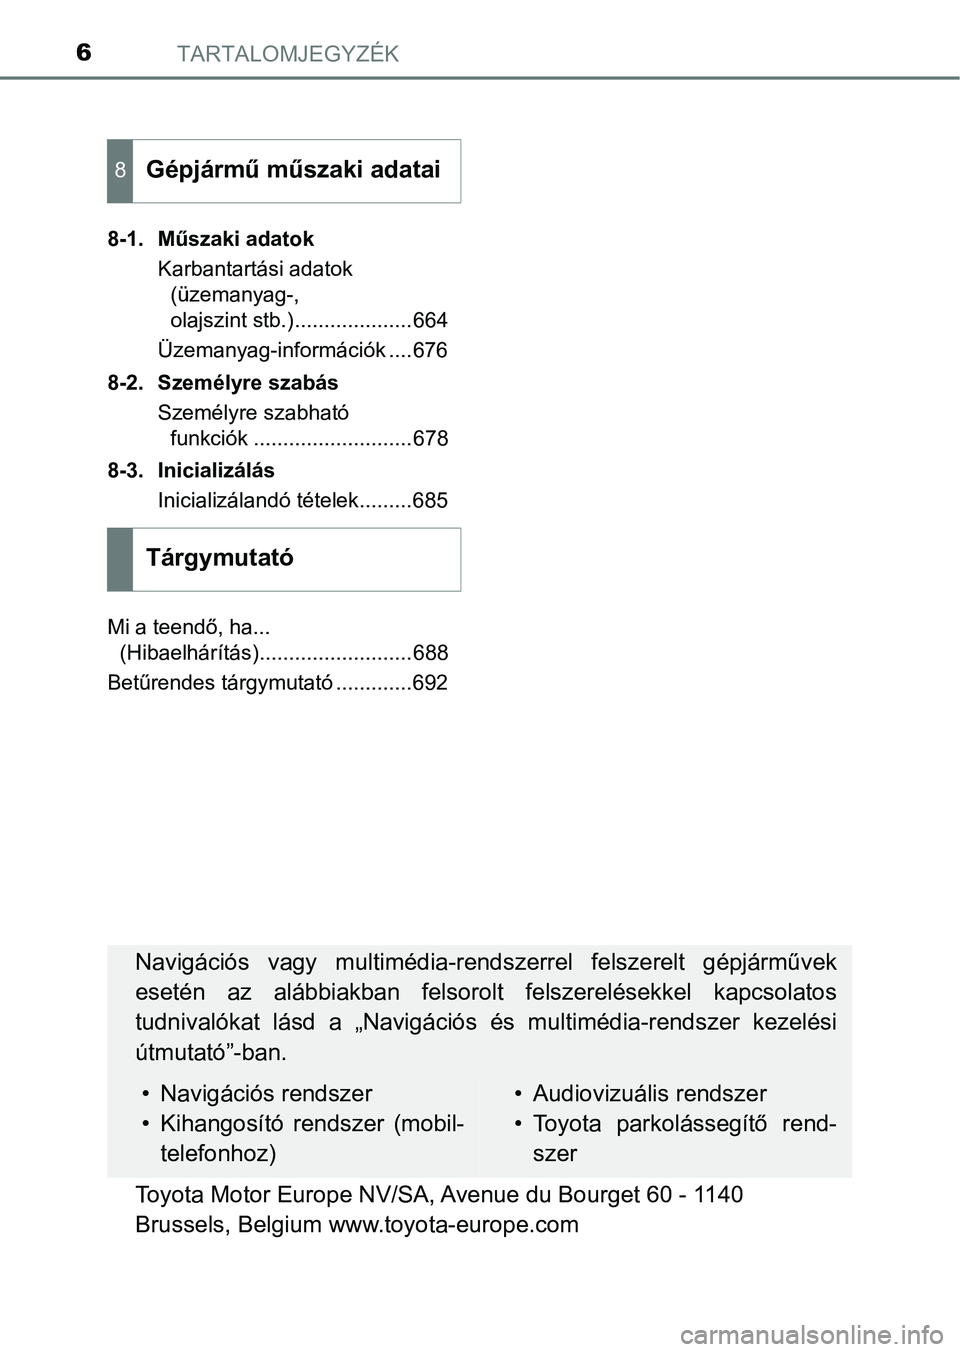 TOYOTA PRIUS 2016  Kezelési útmutató (in Hungarian) TARTALOMJEGYZÉK6
8-1. Műszaki adatokKarbantartási adatok (üzemanyag-, 
olajszint stb.)....................664
Üzemanyag-információk ....676
8-2. Személyre szabás Személyre szabható funkció